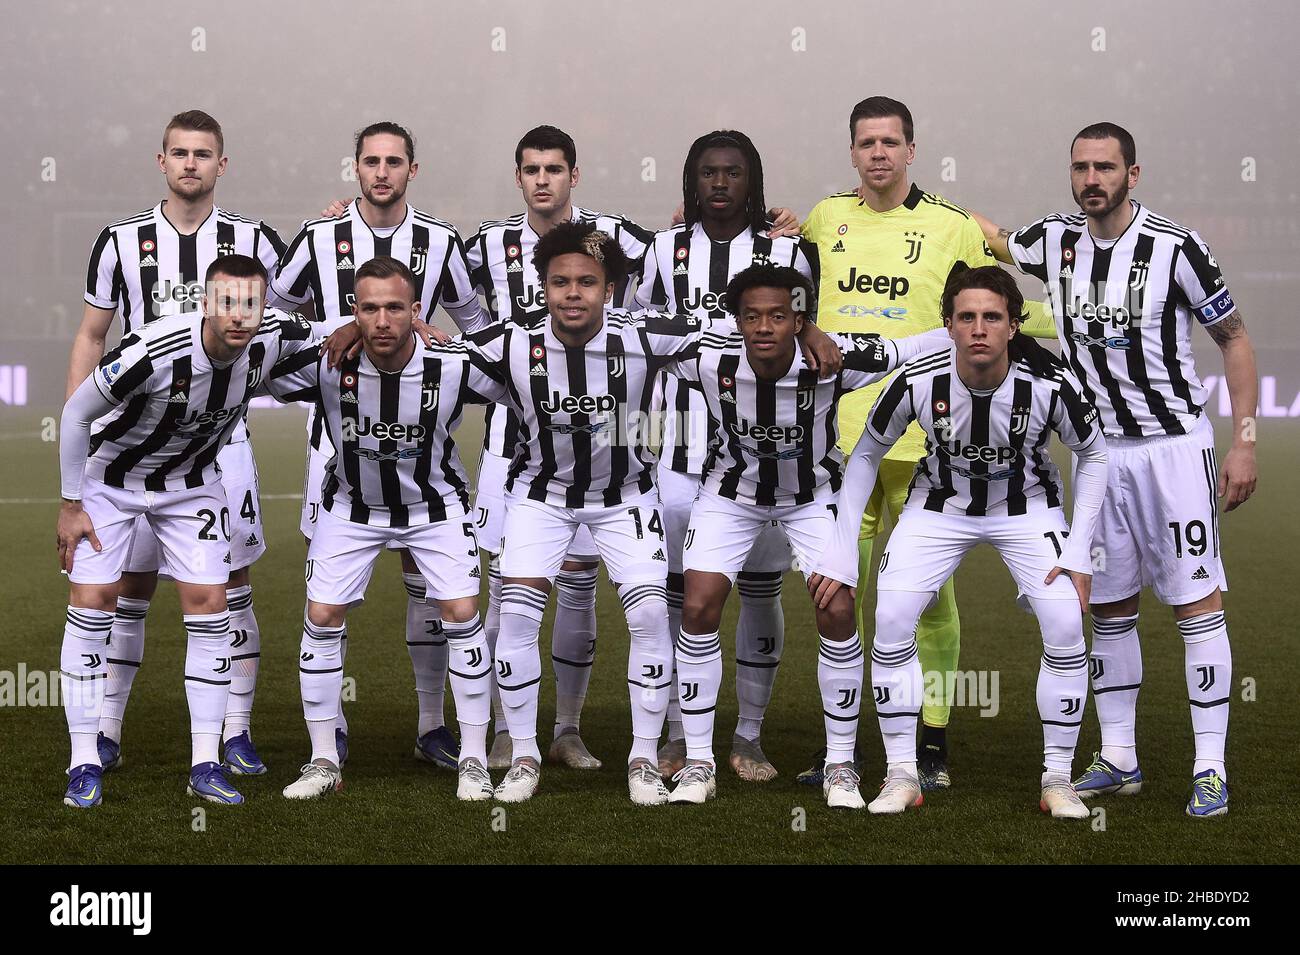 Juventus: campeão da Itália pela 9ª vez seguida - LD SportNews